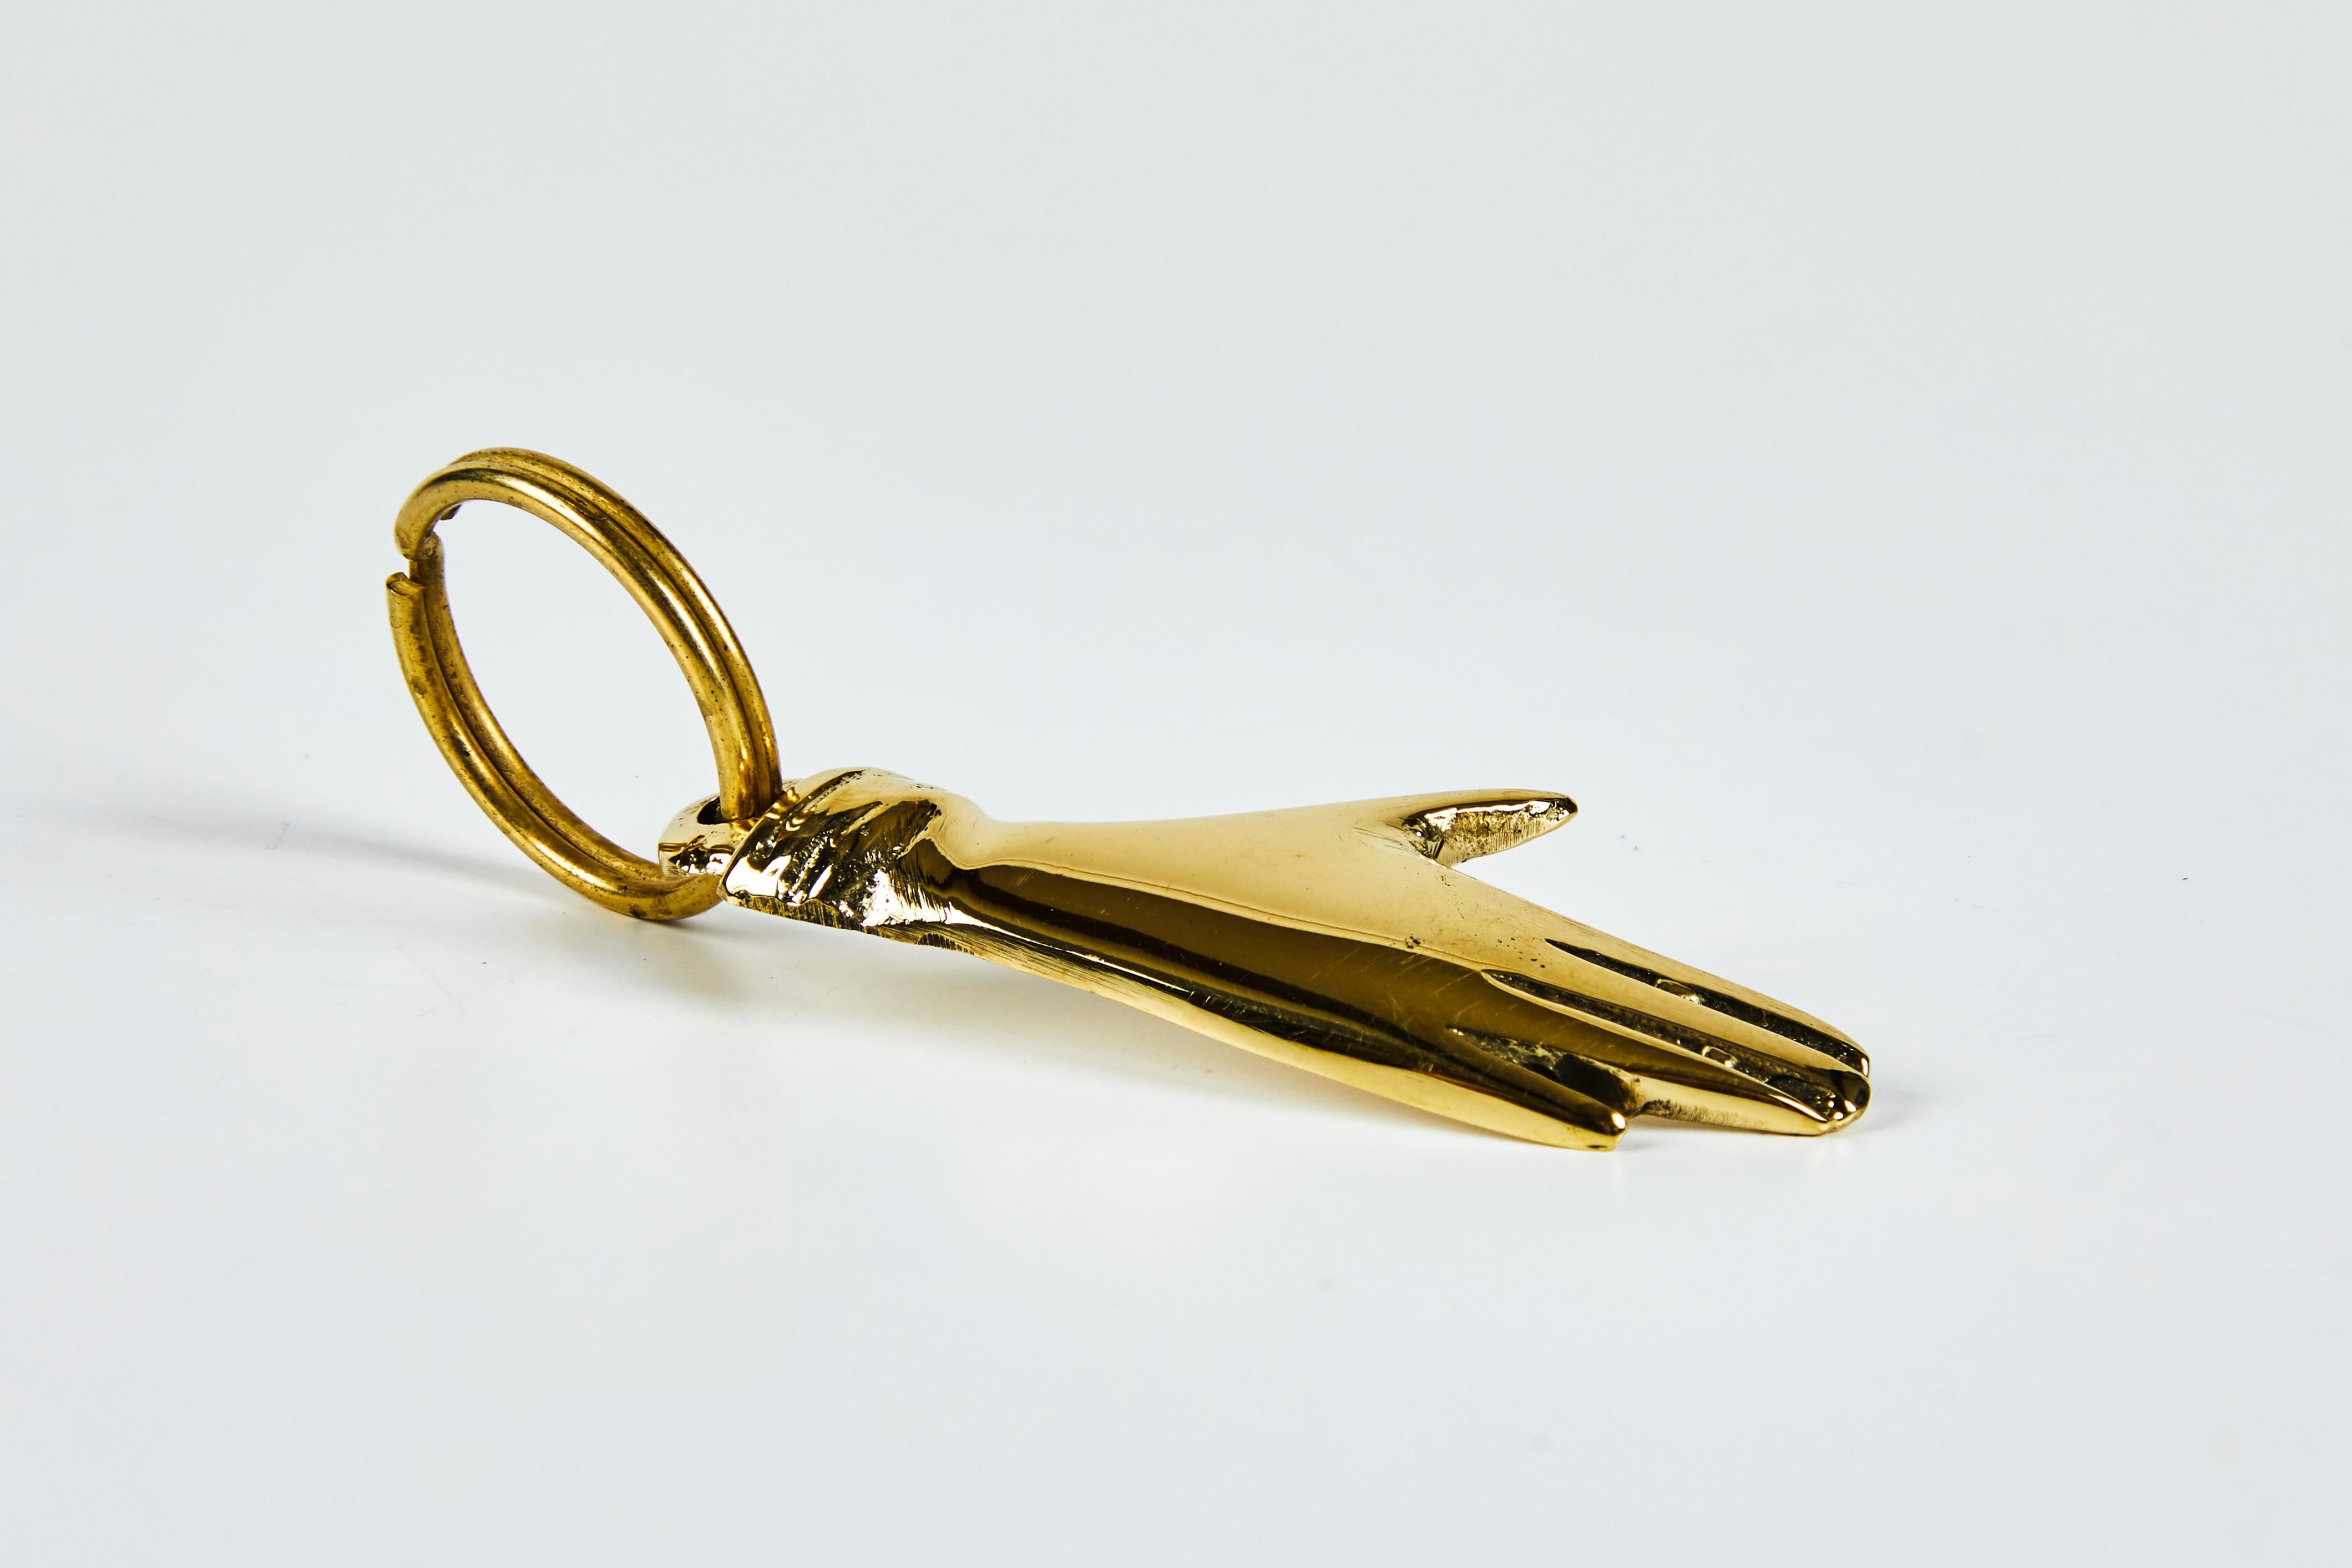 Porte-clés figurine en laiton Carl Auböck modèle #5734 'Hand'. Conçu dans les années 1950, cet objet incroyablement raffiné et sculptural est fabriqué à la main en laiton poli. 

Le prix est par article. Un article en stock prêt à être expédié.